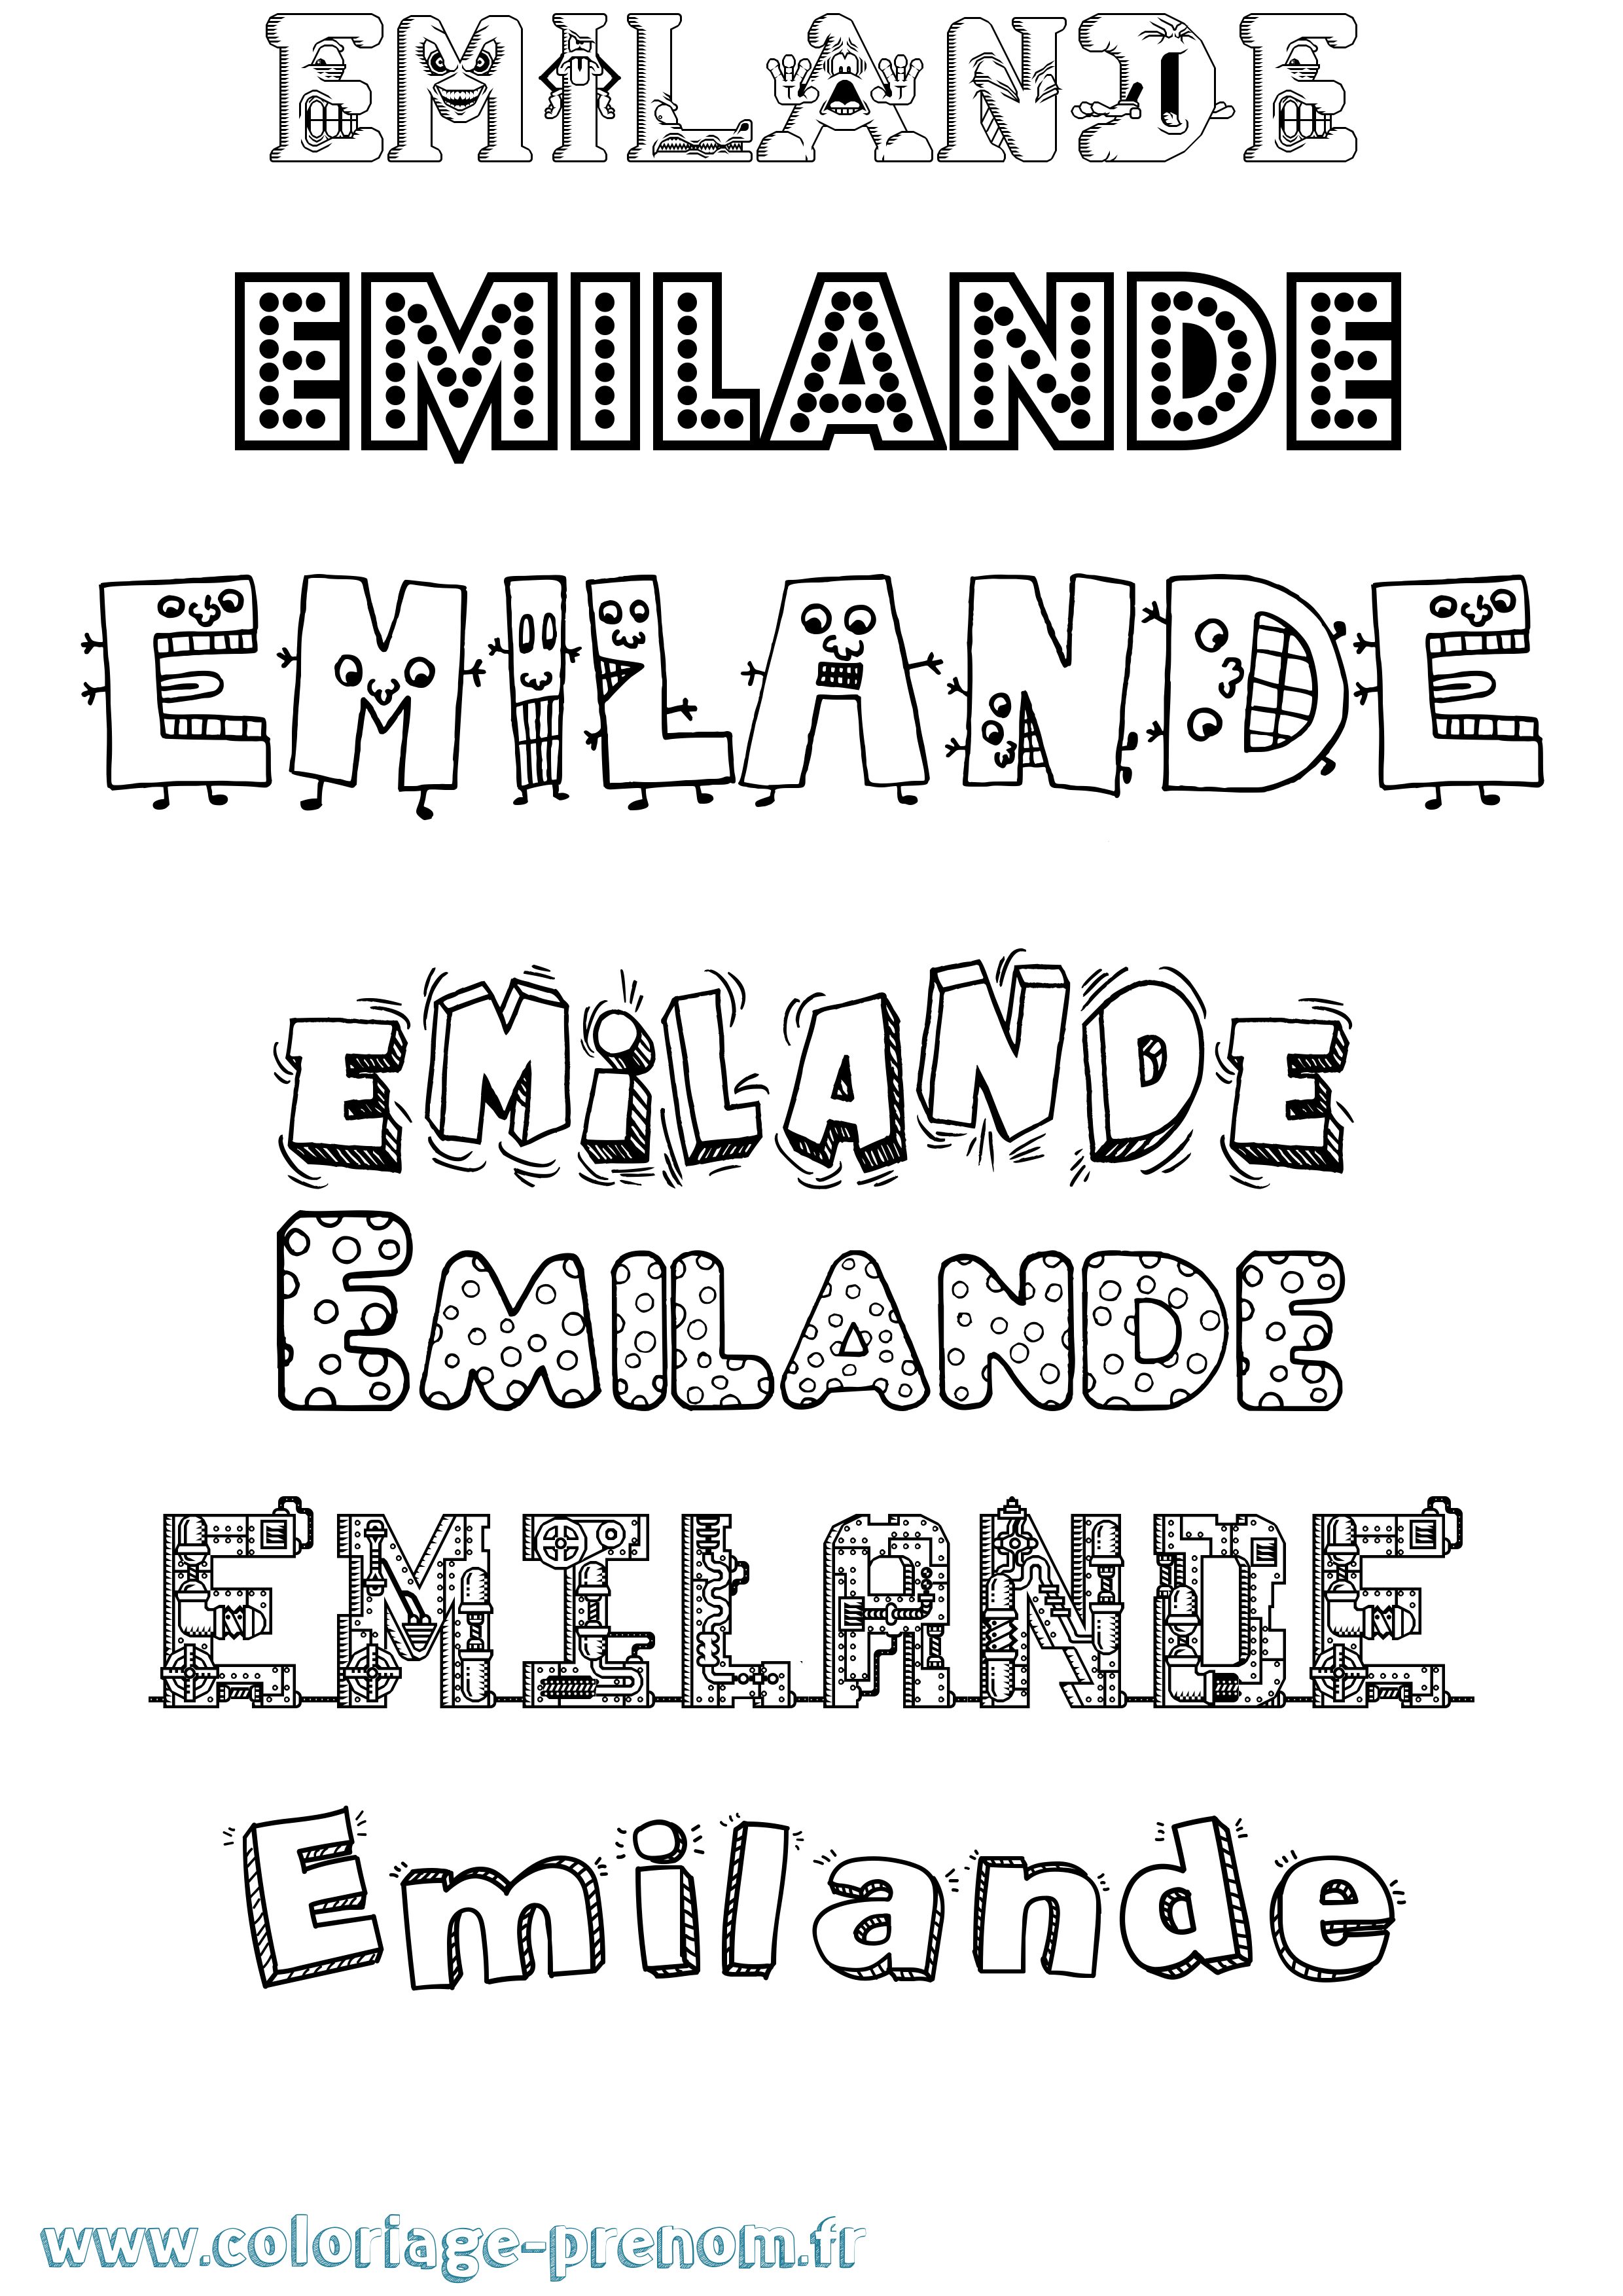 Coloriage prénom Emilande Fun